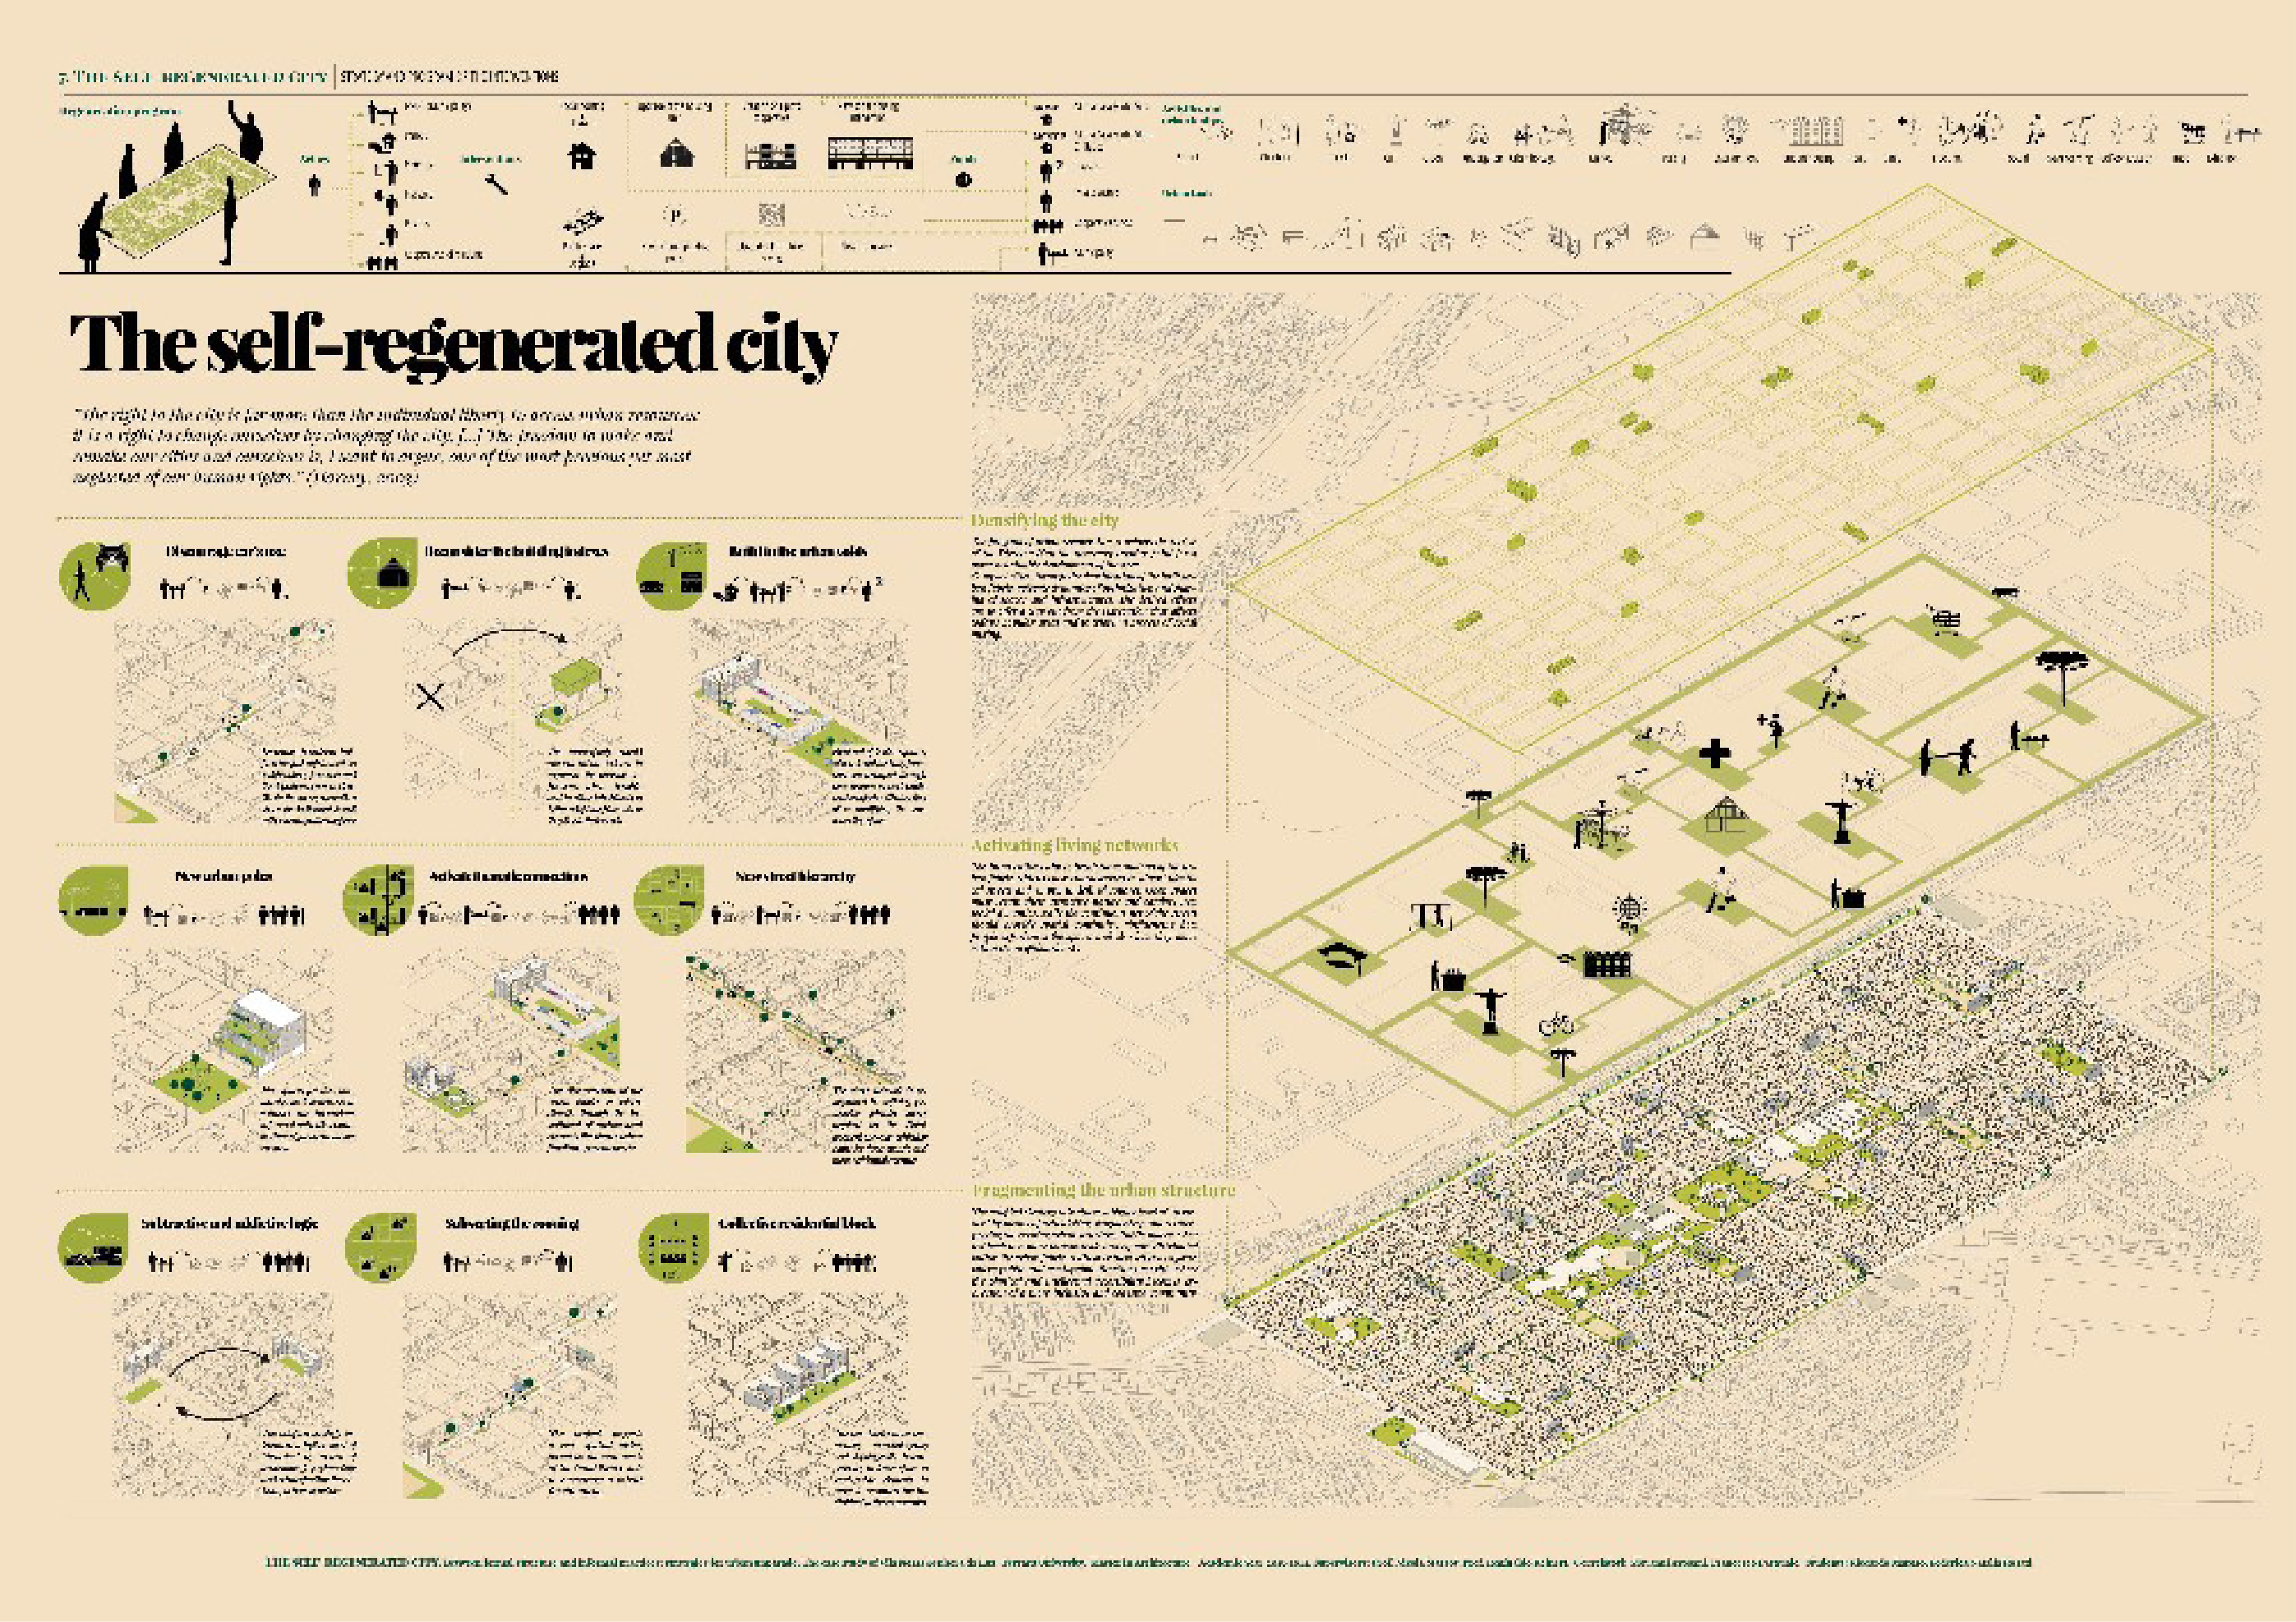 Curitiba self regenerated city